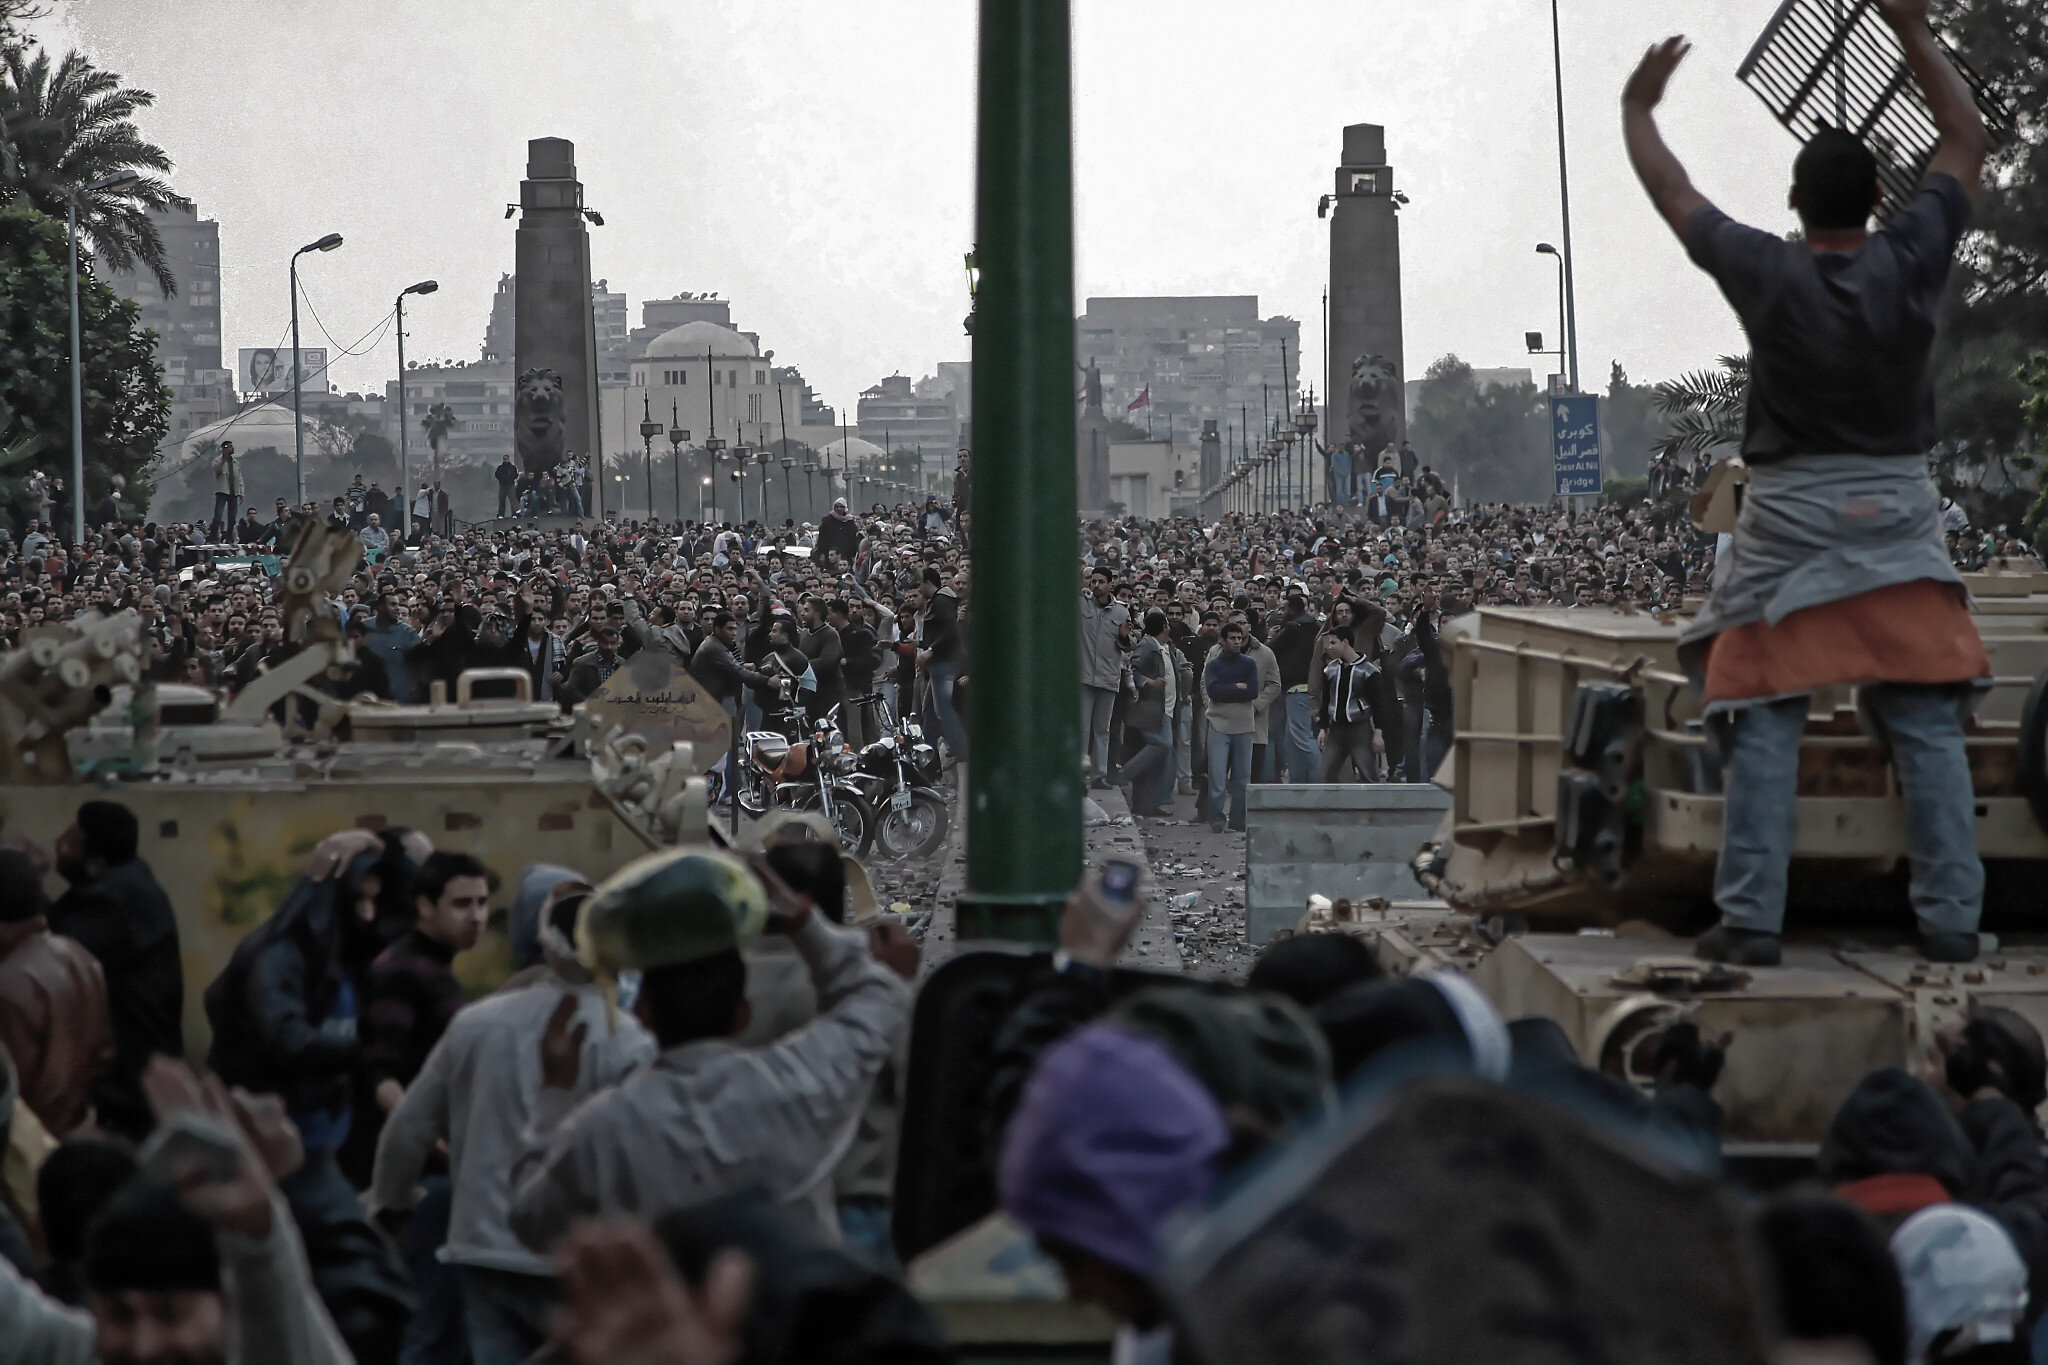 Des défenseurs de la place Tahrir s'abritent derrière des chars d'assaut alors que des partisans de Moubarak lancent des pierres contre eux à l'entrée de la place Qasr el-Nil (toutes les photos sont une courtoisie de Iason Athanasiadis).